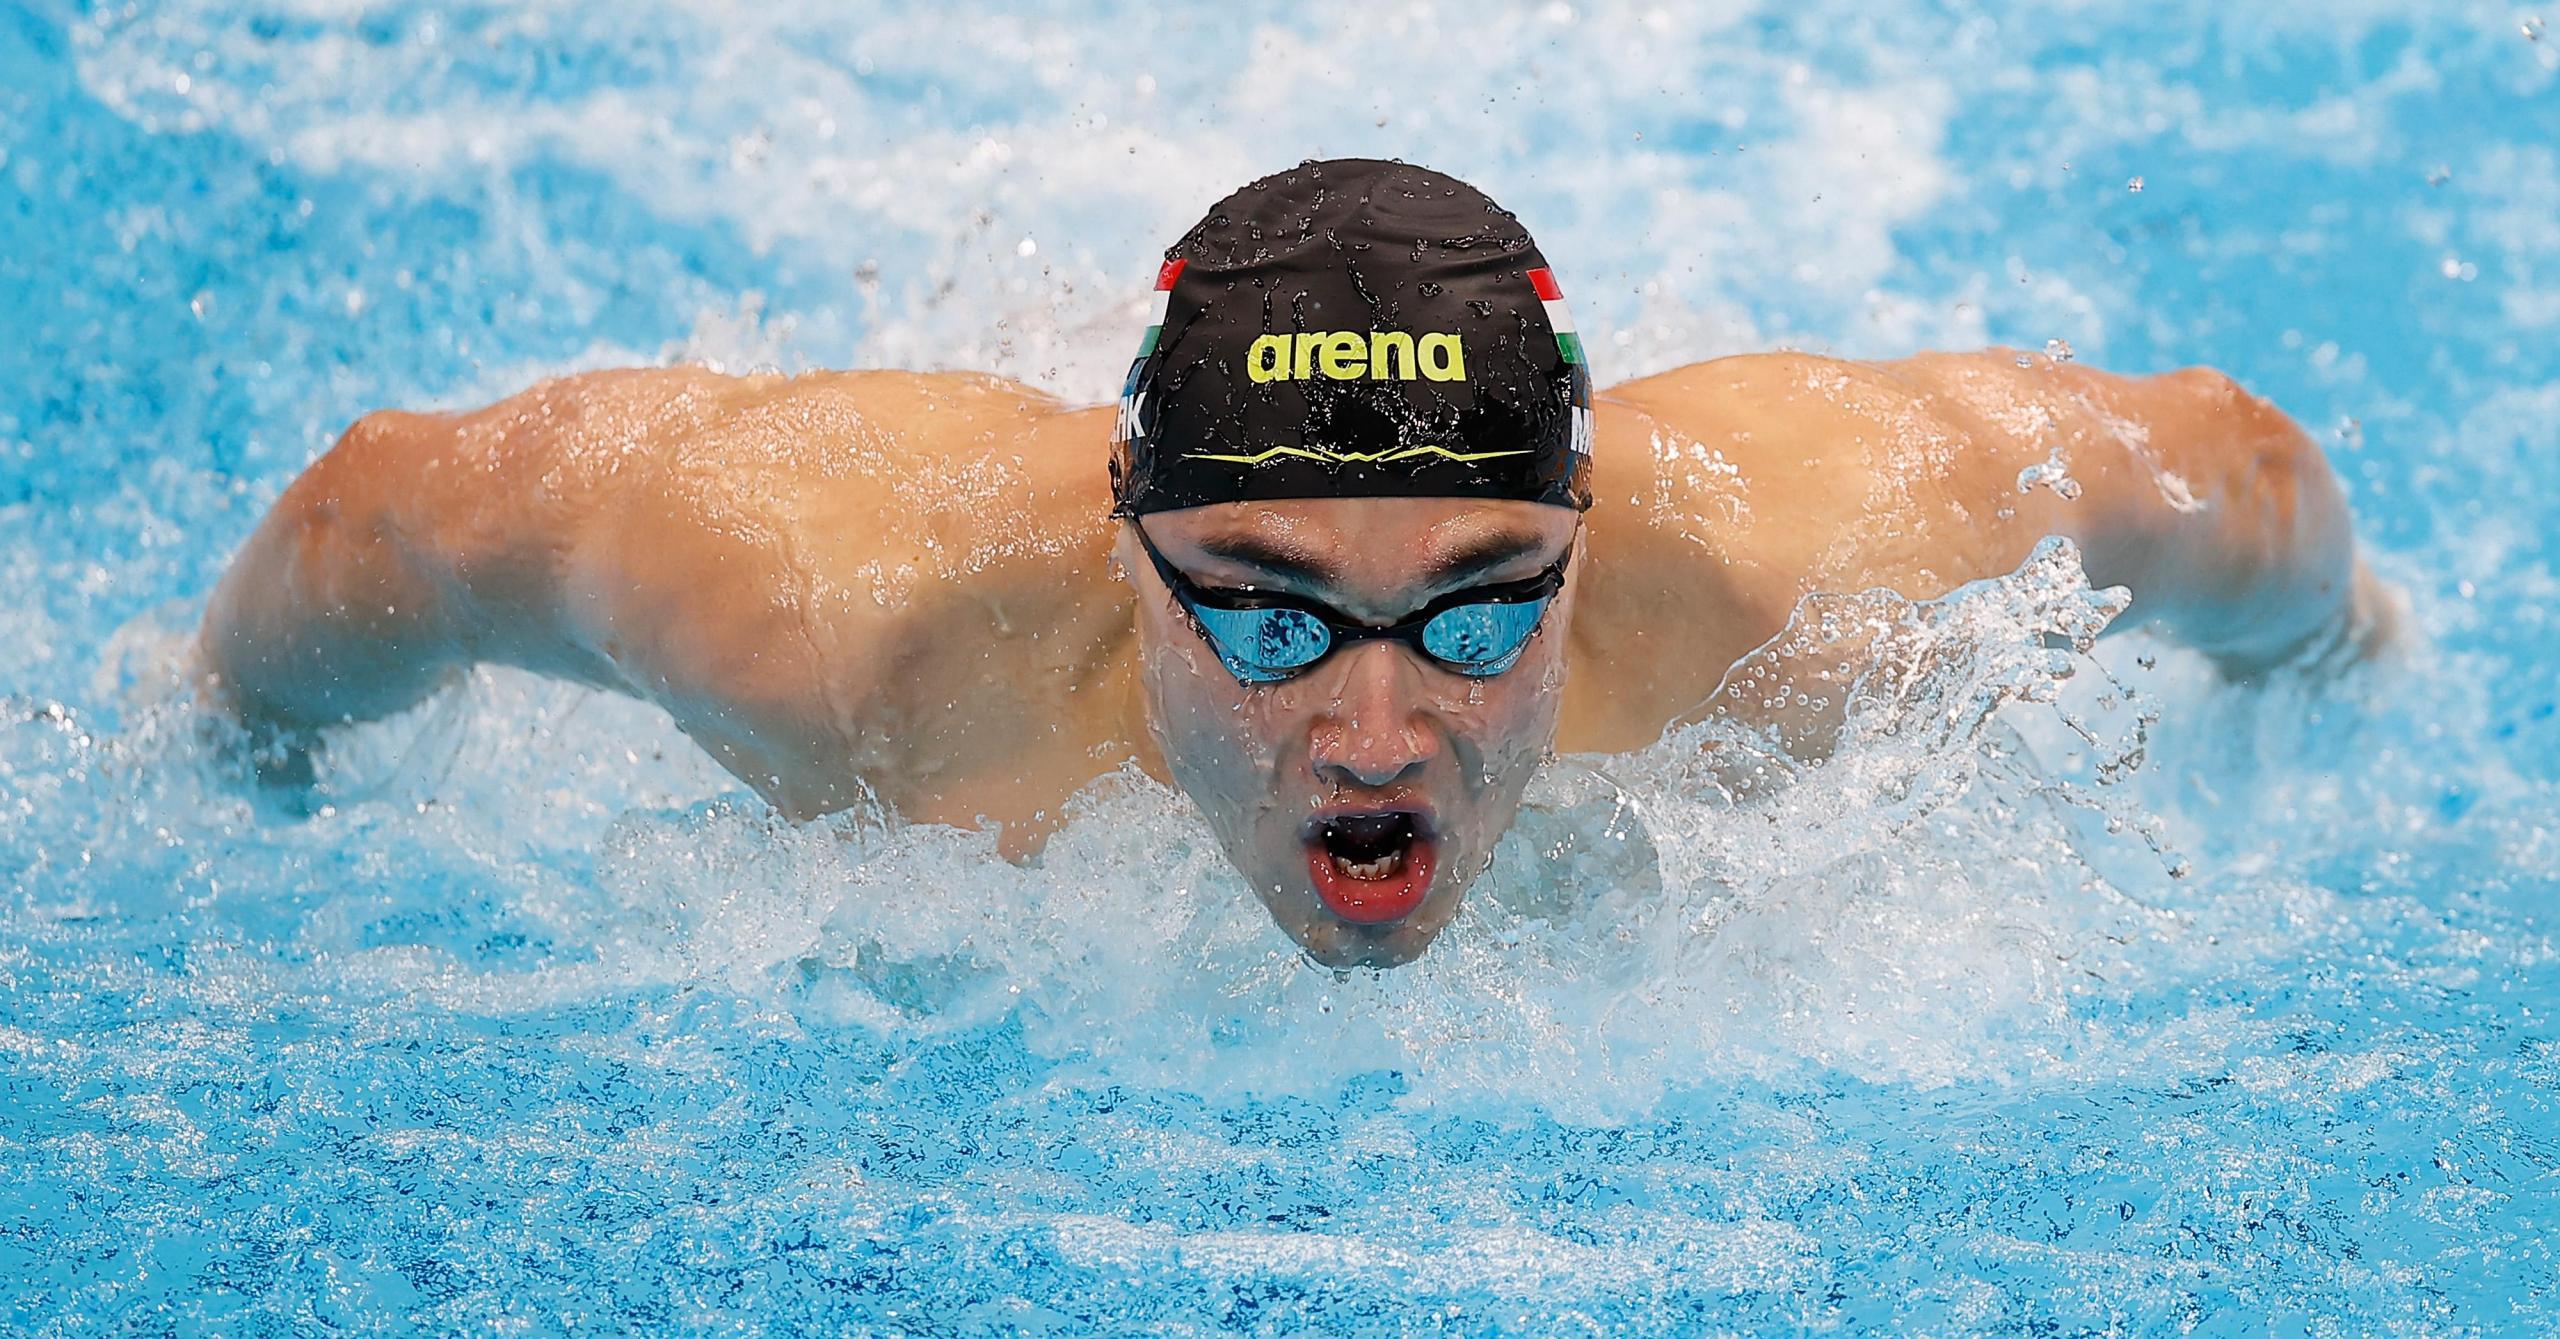 游泳——男子200米蝶泳决赛:匈牙利选手夺冠,意大利选手获得季军